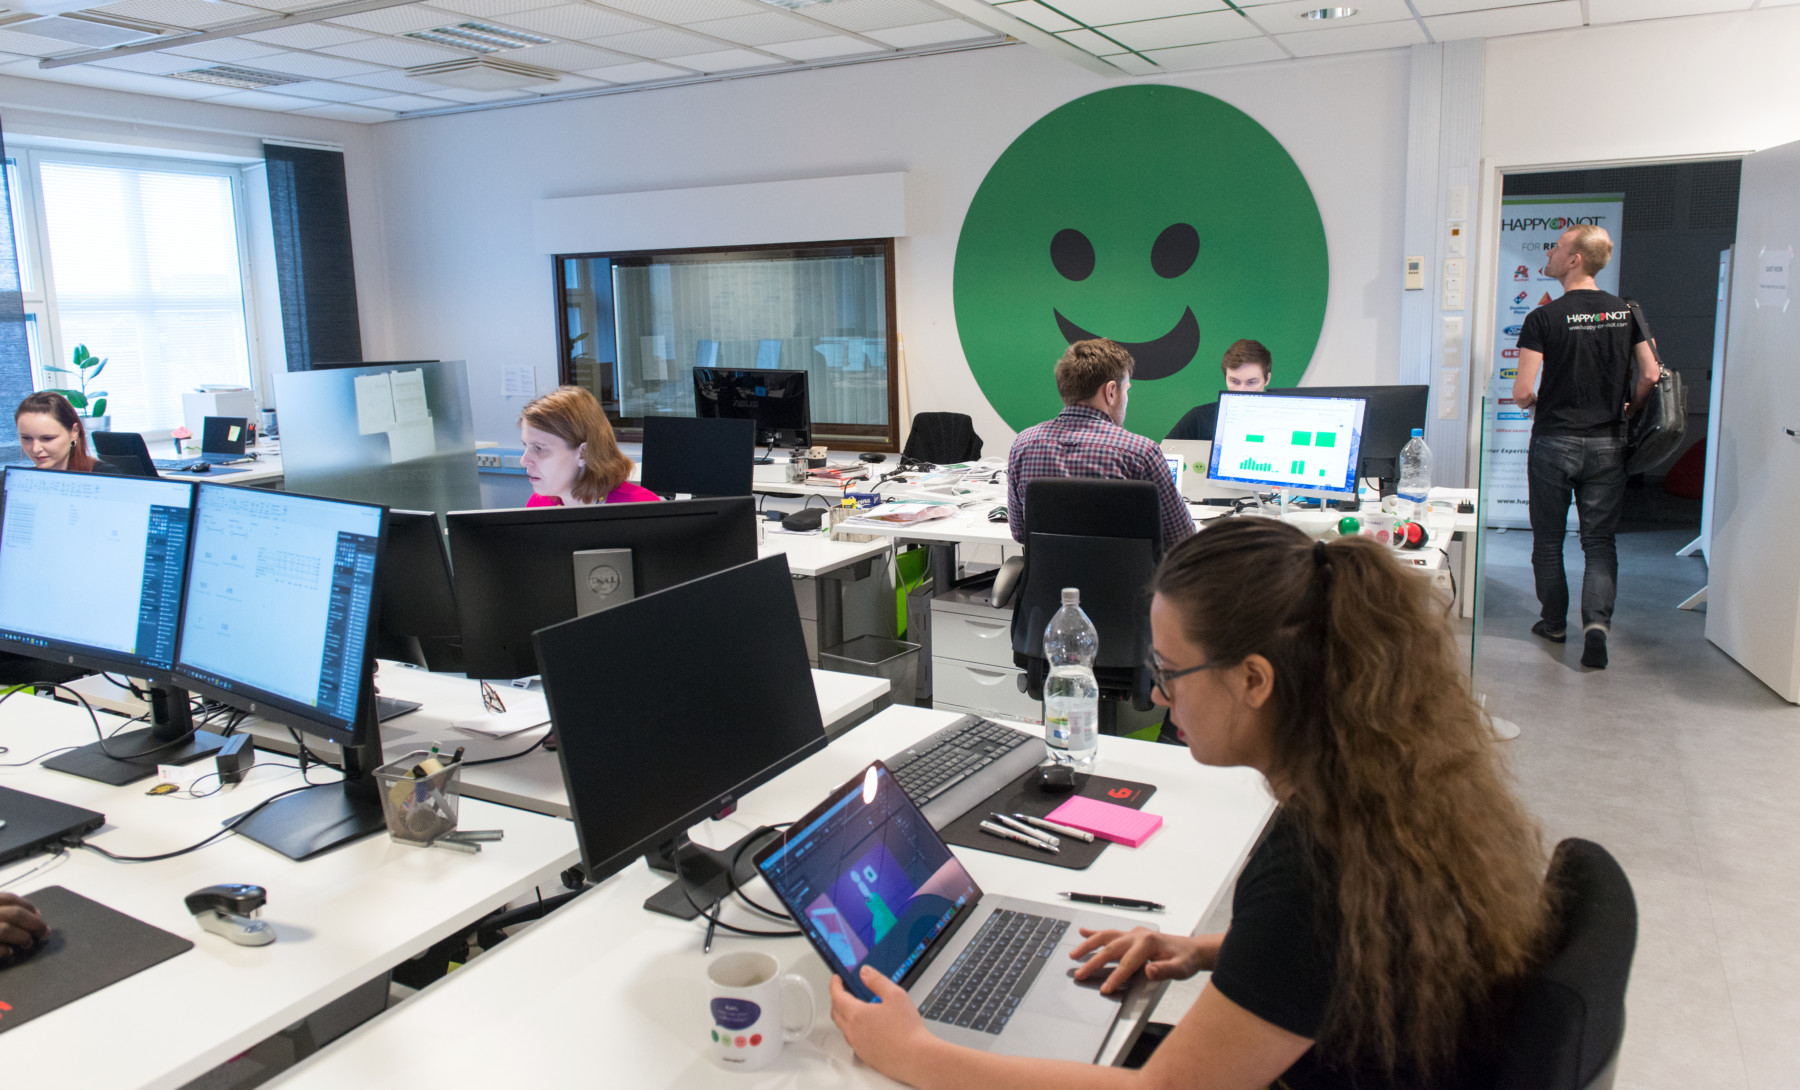 Varias mujeres y un hombre trabajan sentados ante sus ordenadores en una oficina luminosa y moderna.